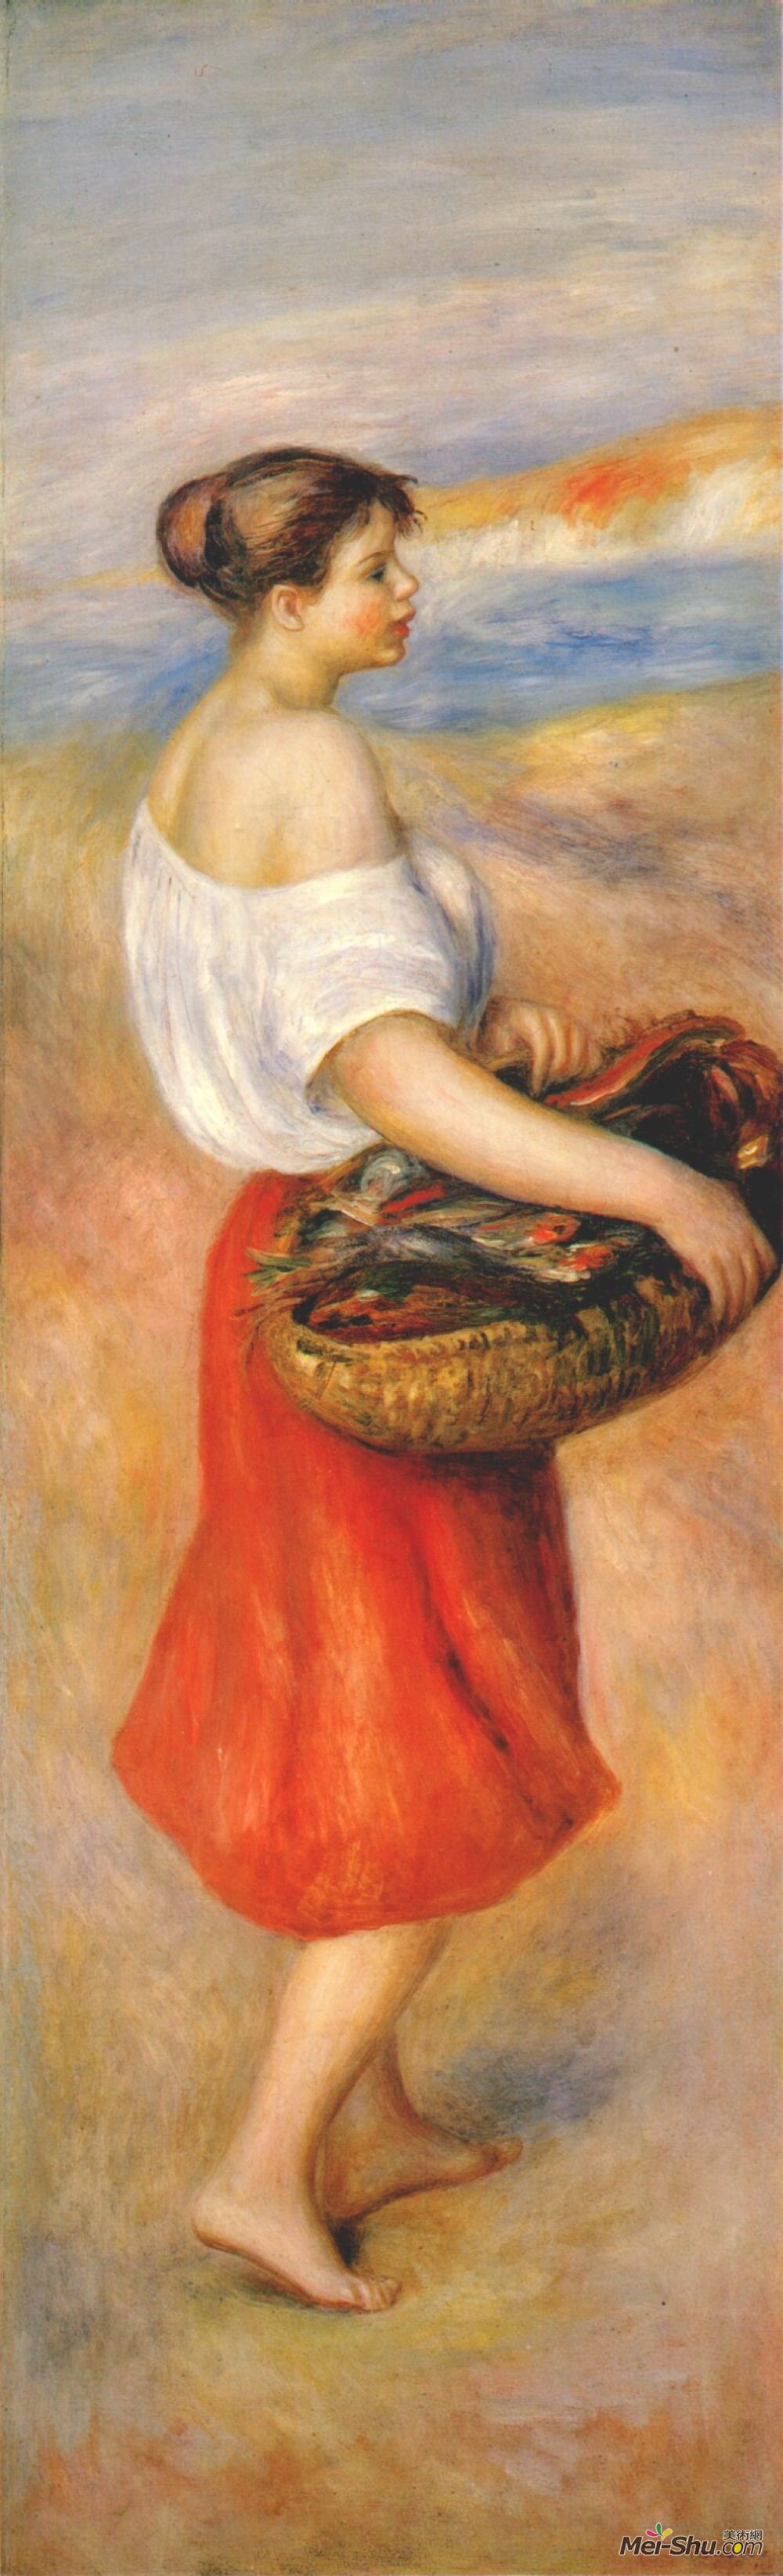 renoir皮耶尔·奥古斯特·雷诺阿油画1824《带着篮子鱼的女孩》皮耶尔